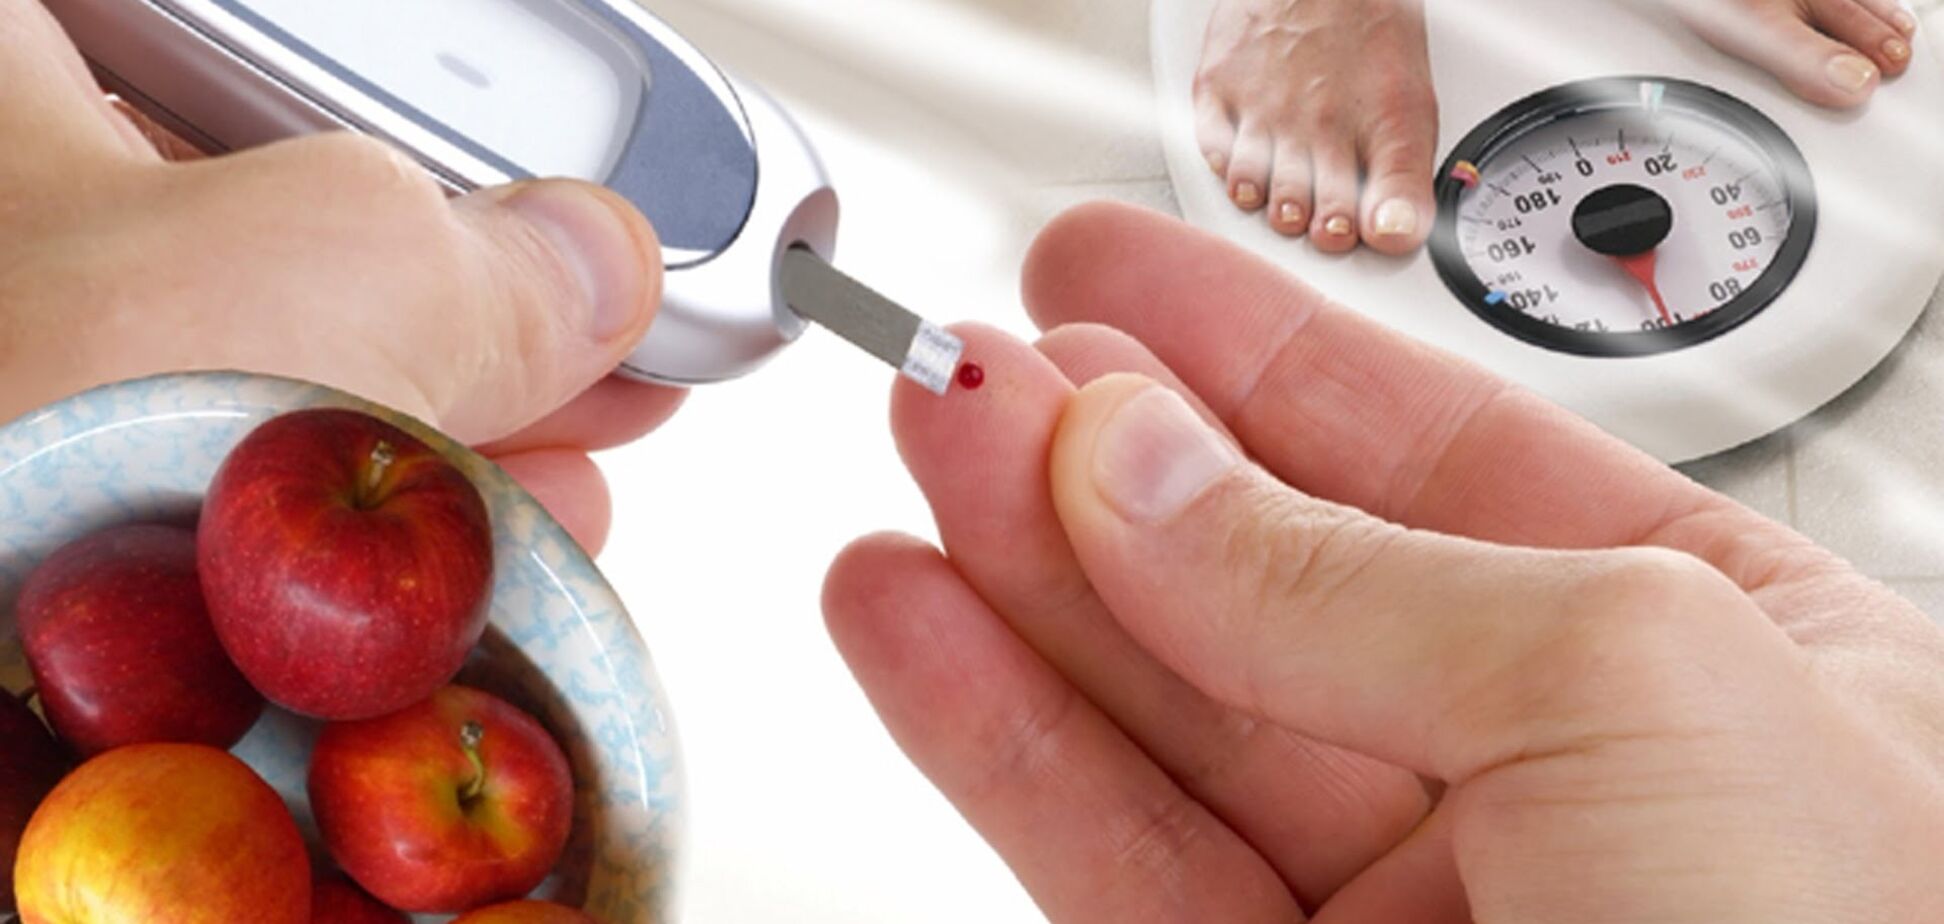 Ученые рассказали, как с помощью диеты излечить диабет 2 типа